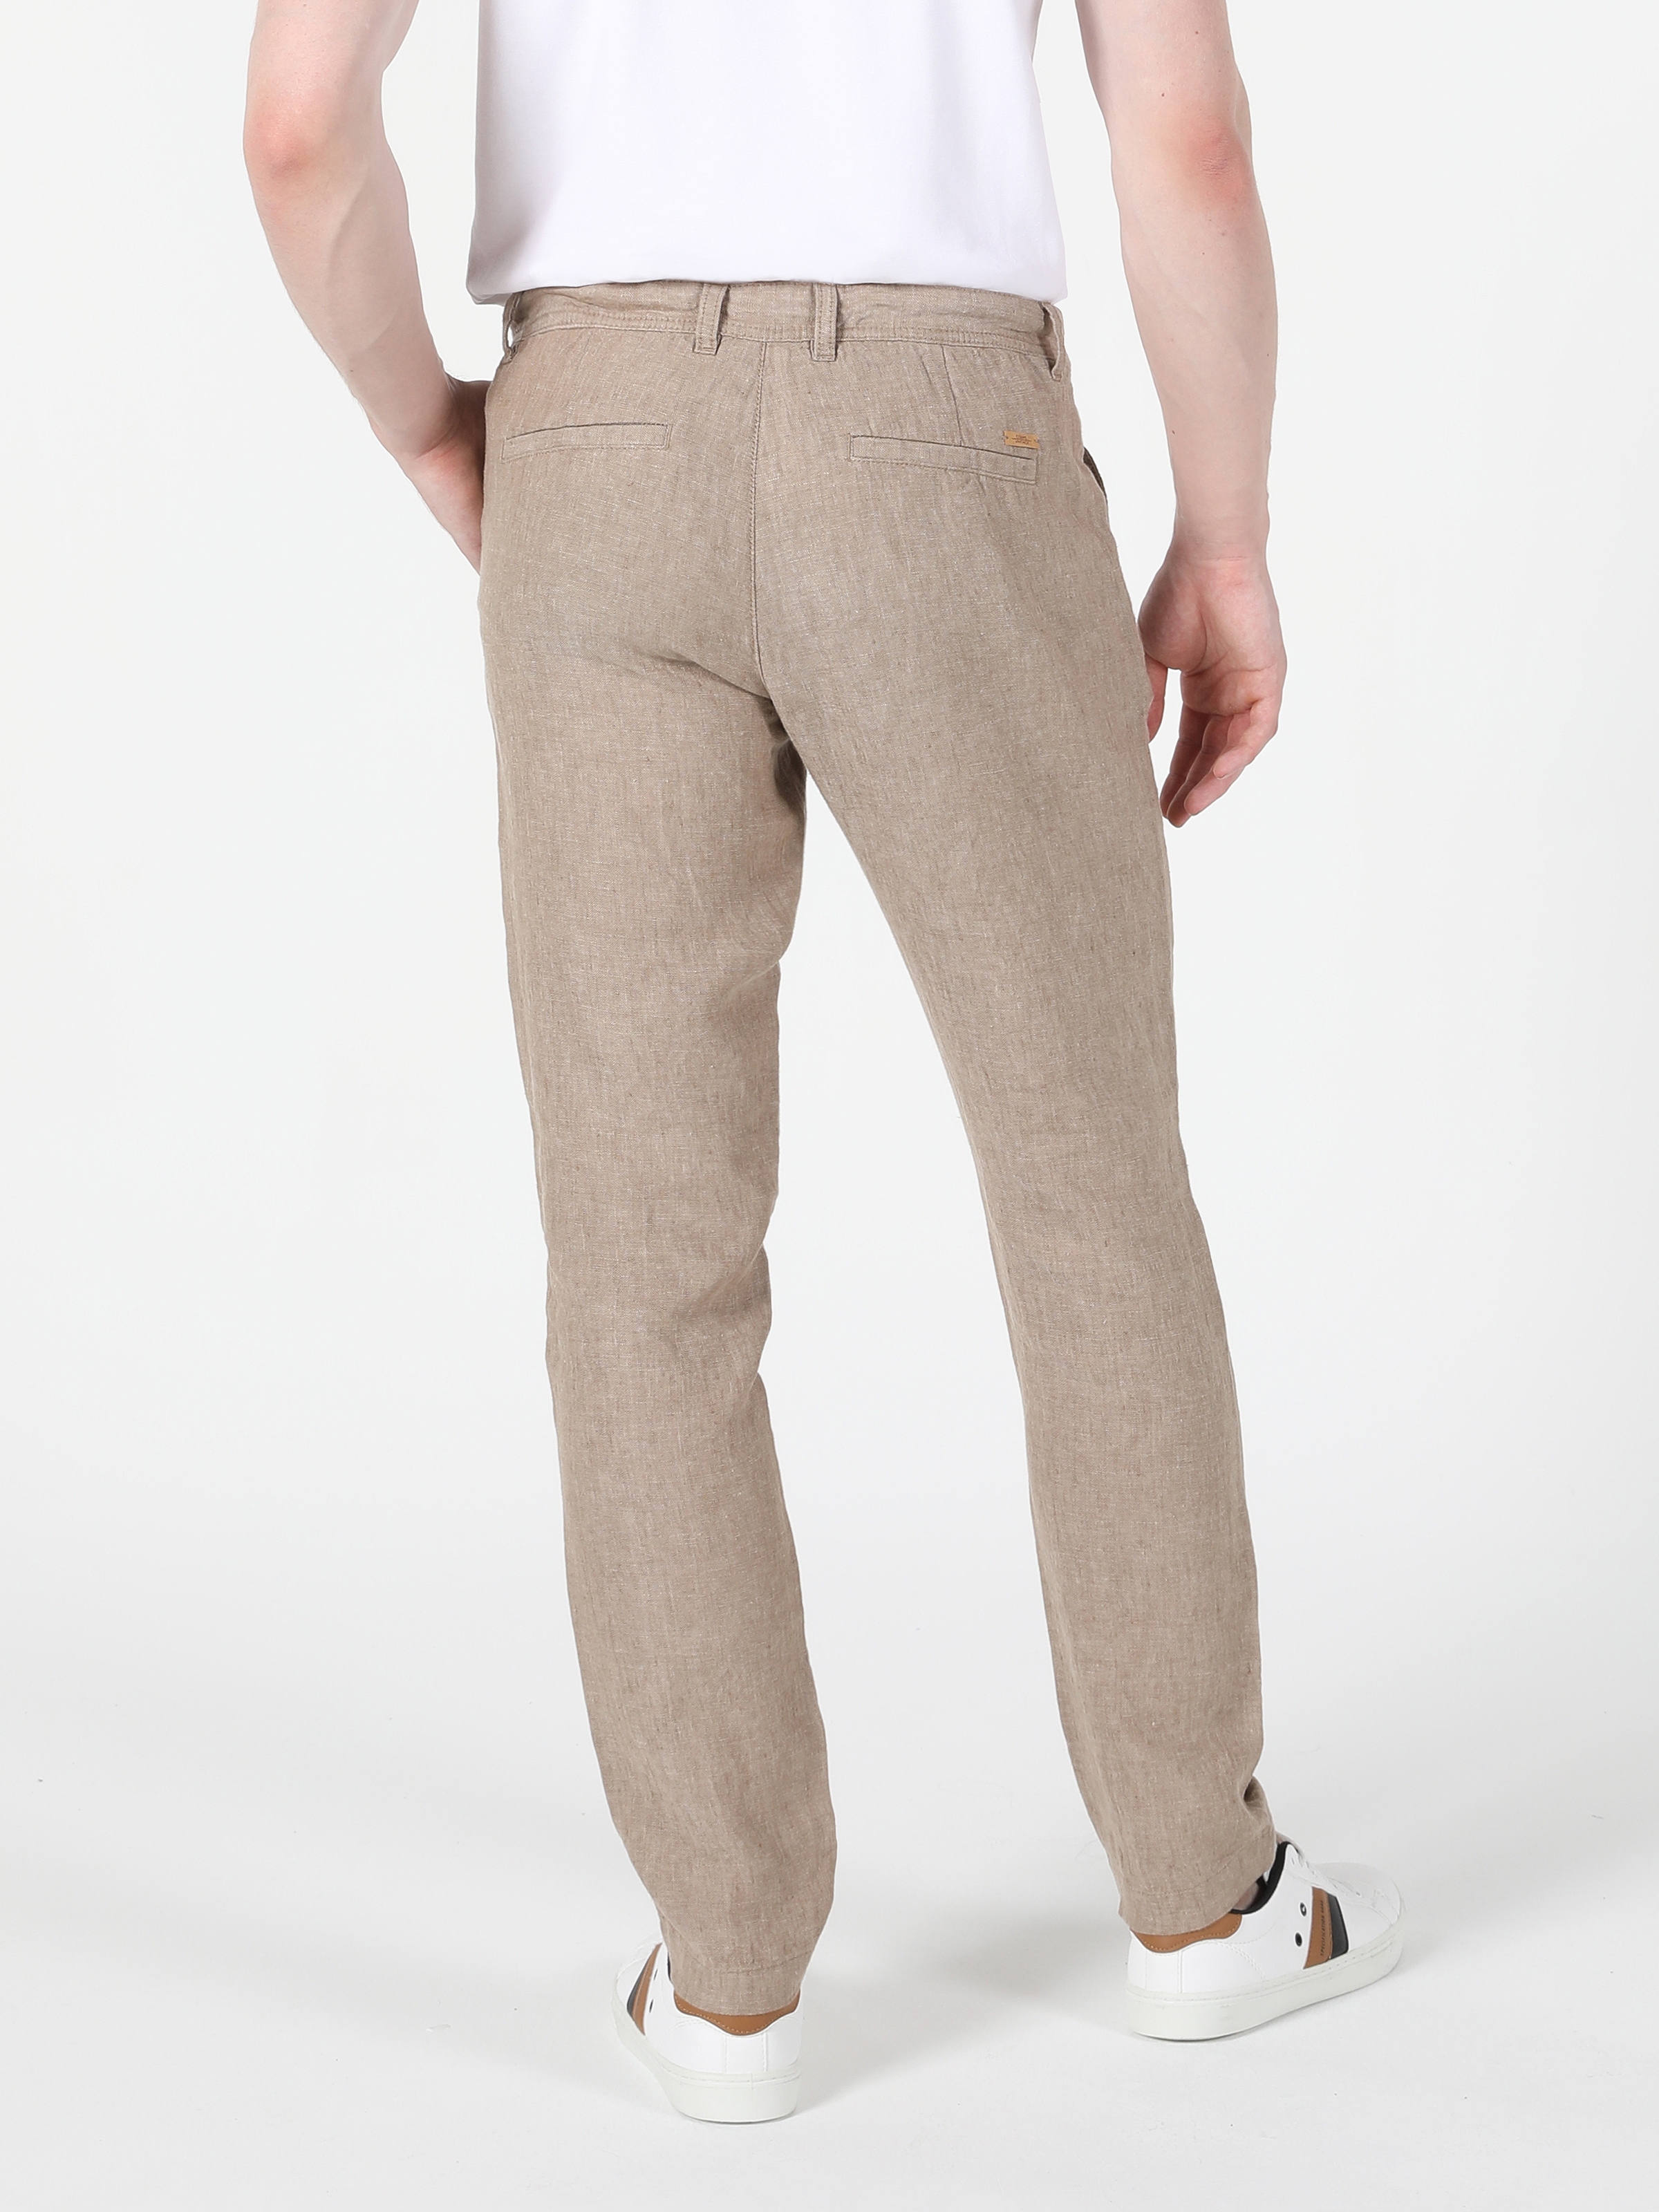 Afficher les détails de Pantalon Homme Marron Taille Moyenne Coupe Droite Jambe Droite